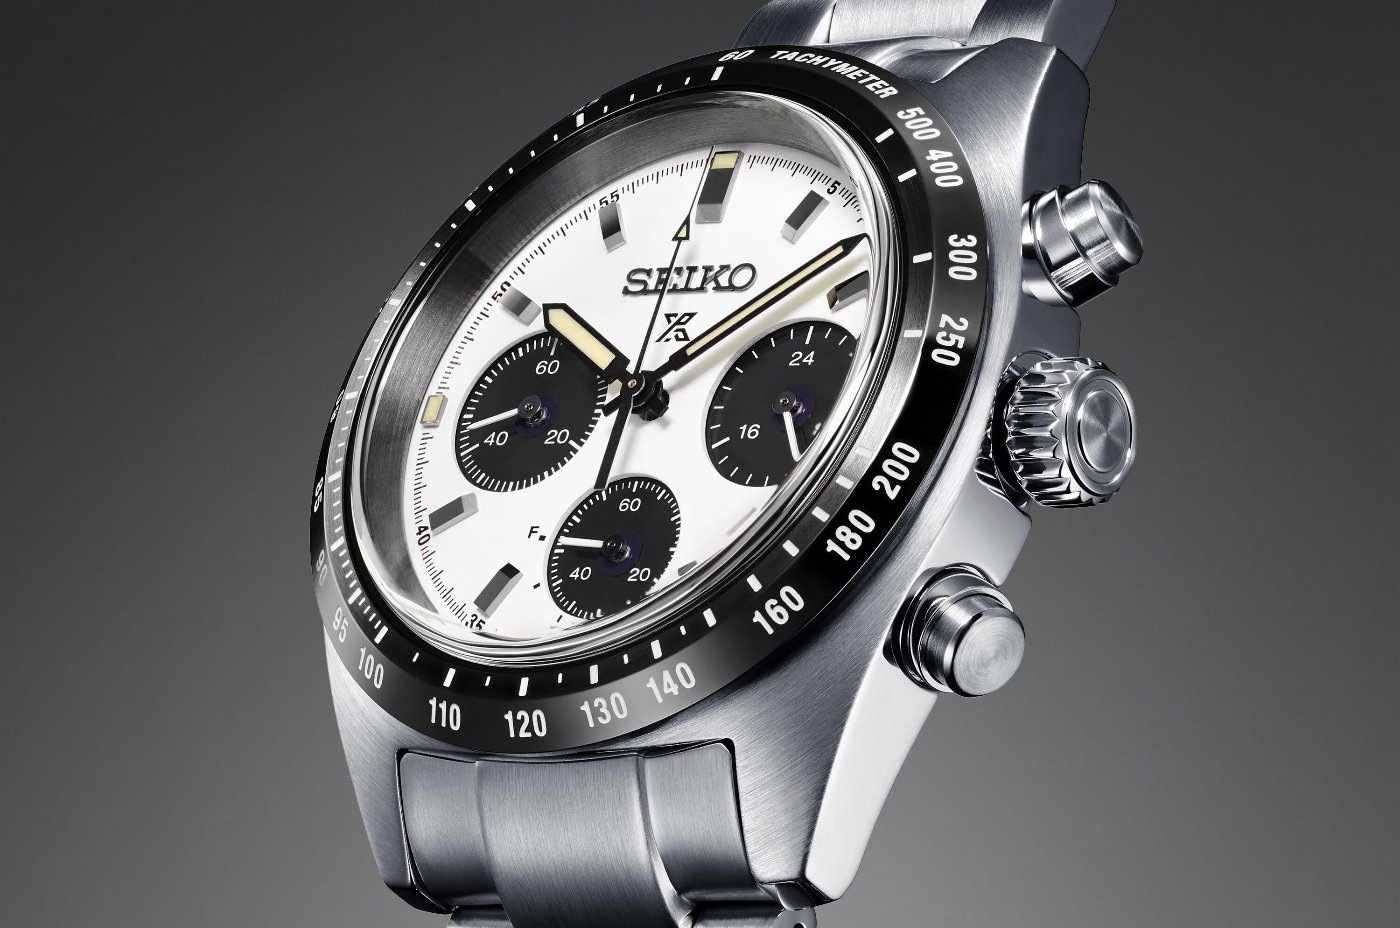 Seiko unveils new Speedtimer timepieces